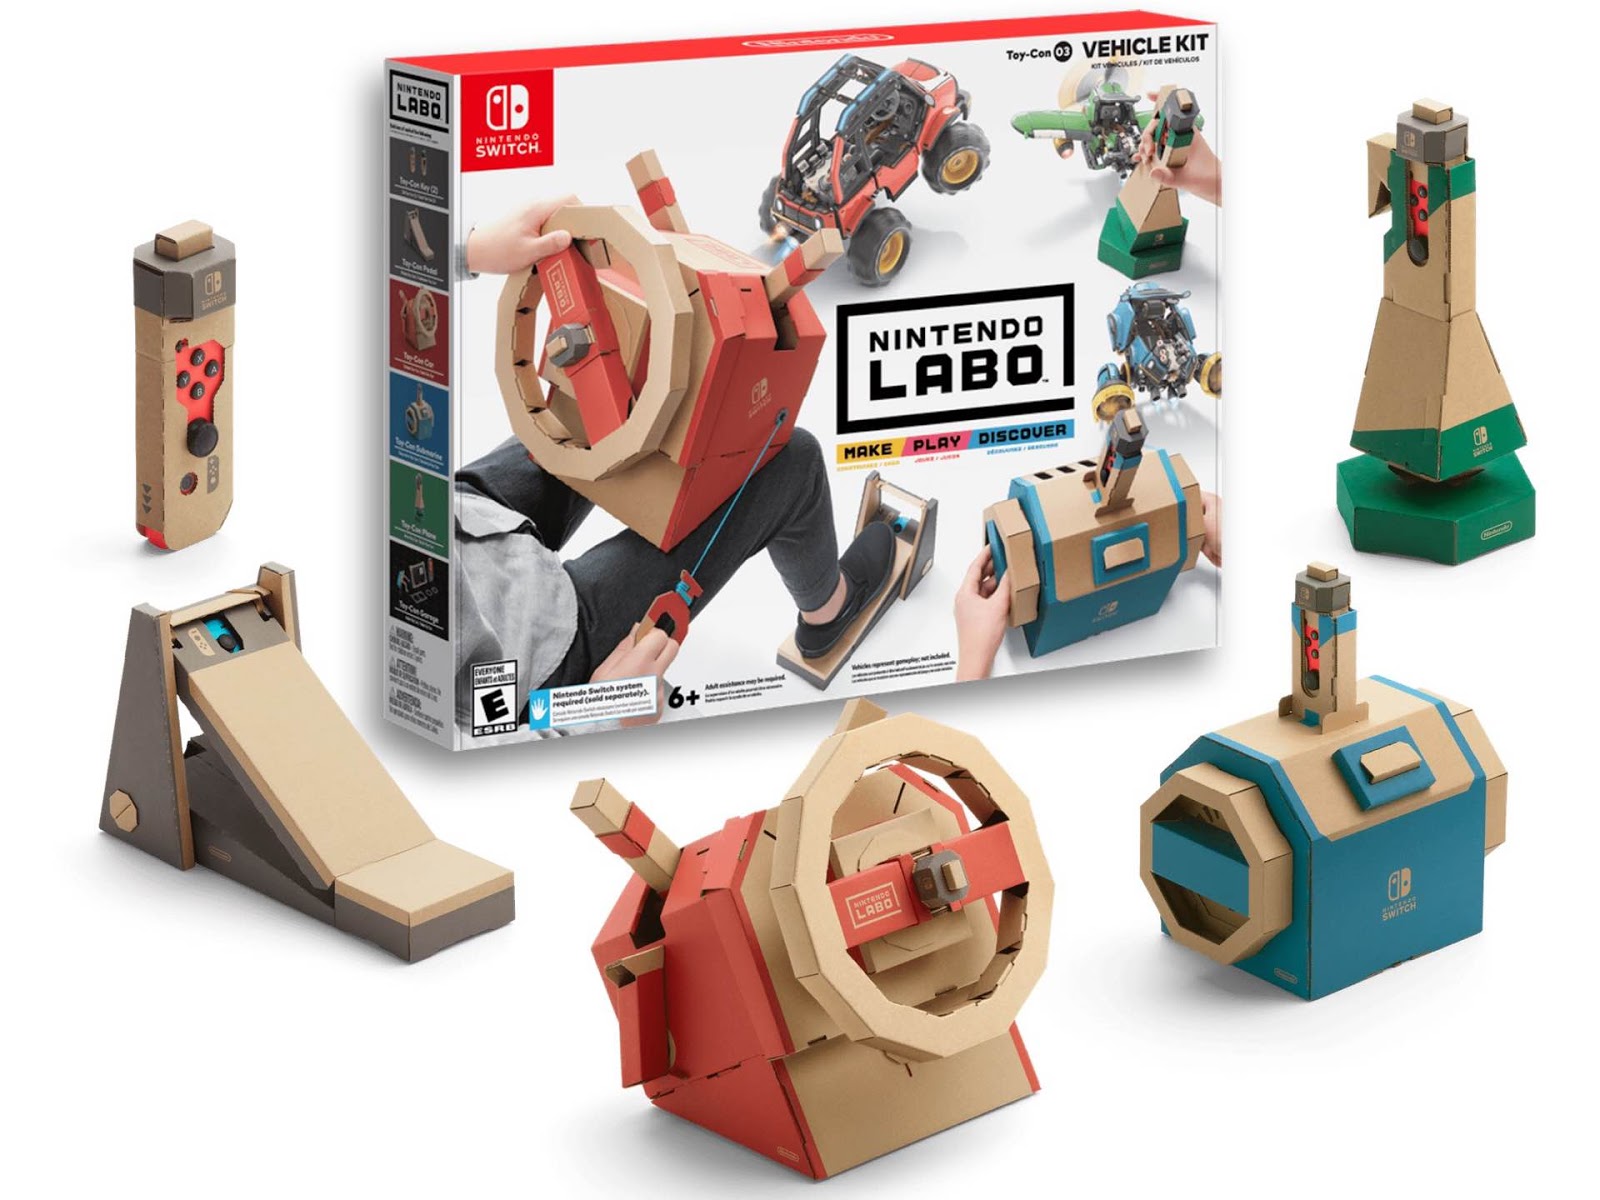 Nintendo Labo Toy-Con 03 Vehicle Kit - Nintendo Switch Kiegészítők